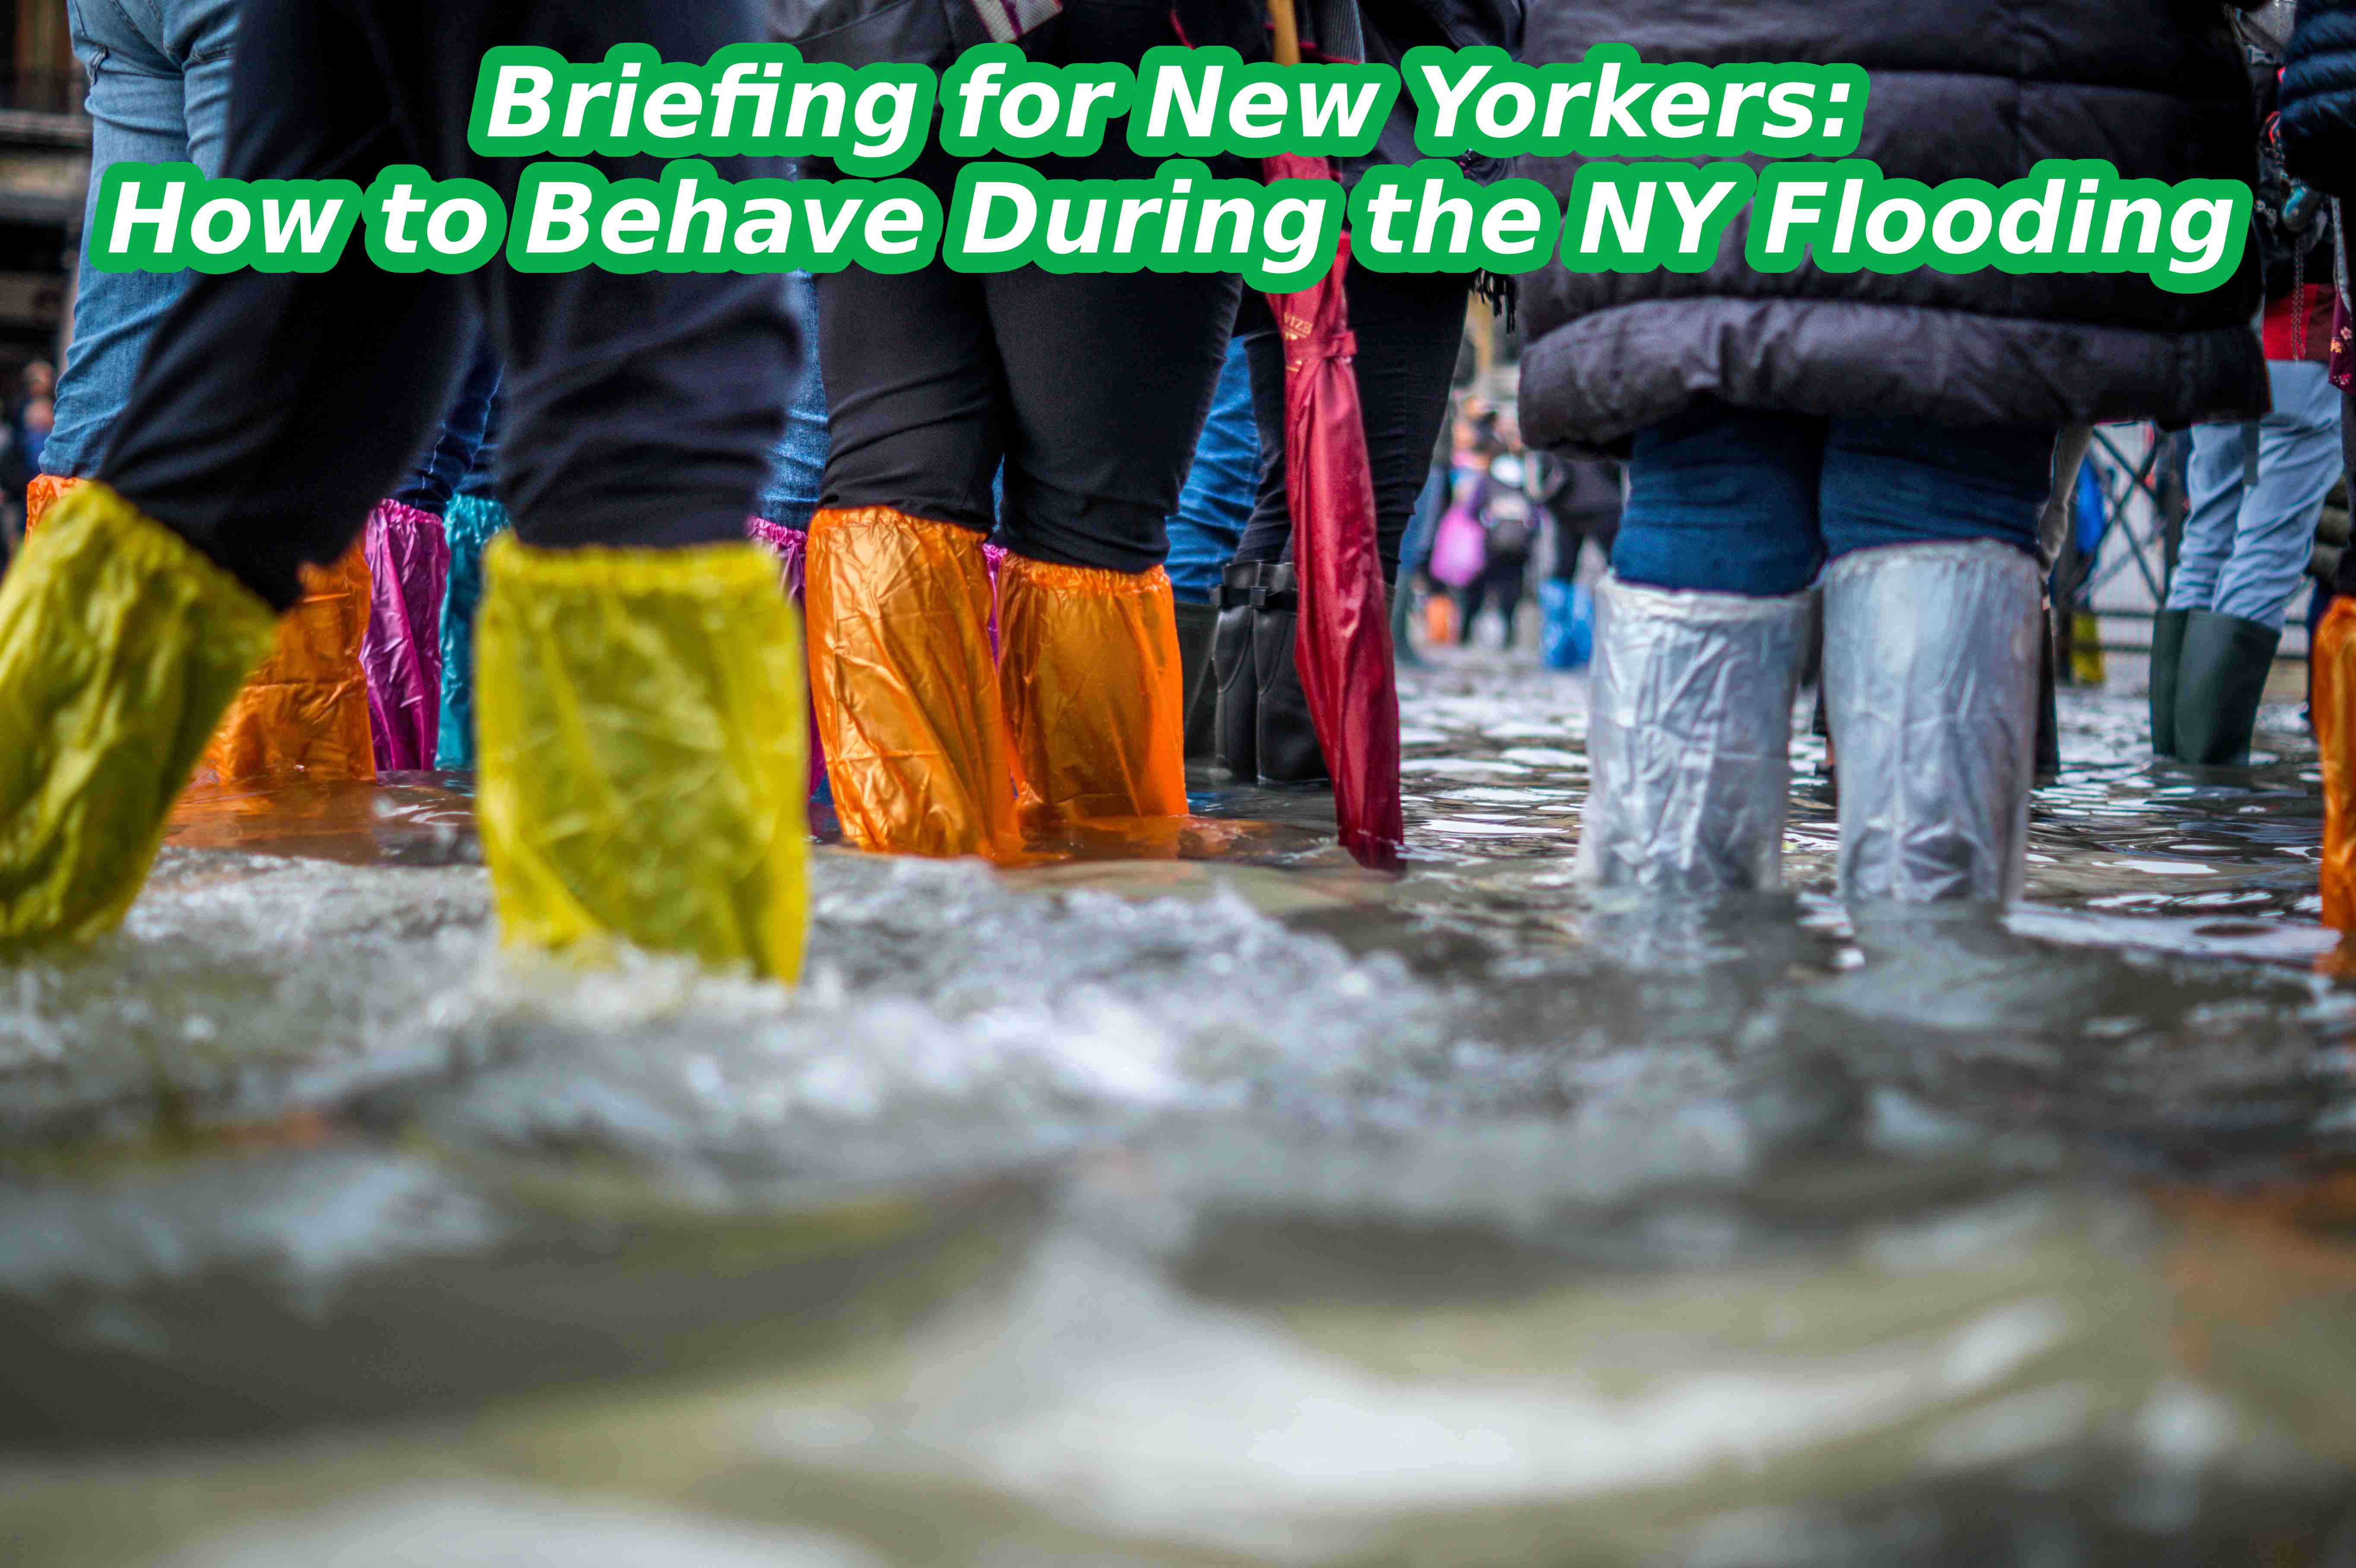 Reunión informativa para los neoyorquinos: Cómo comportarse durante las inundaciones de NY